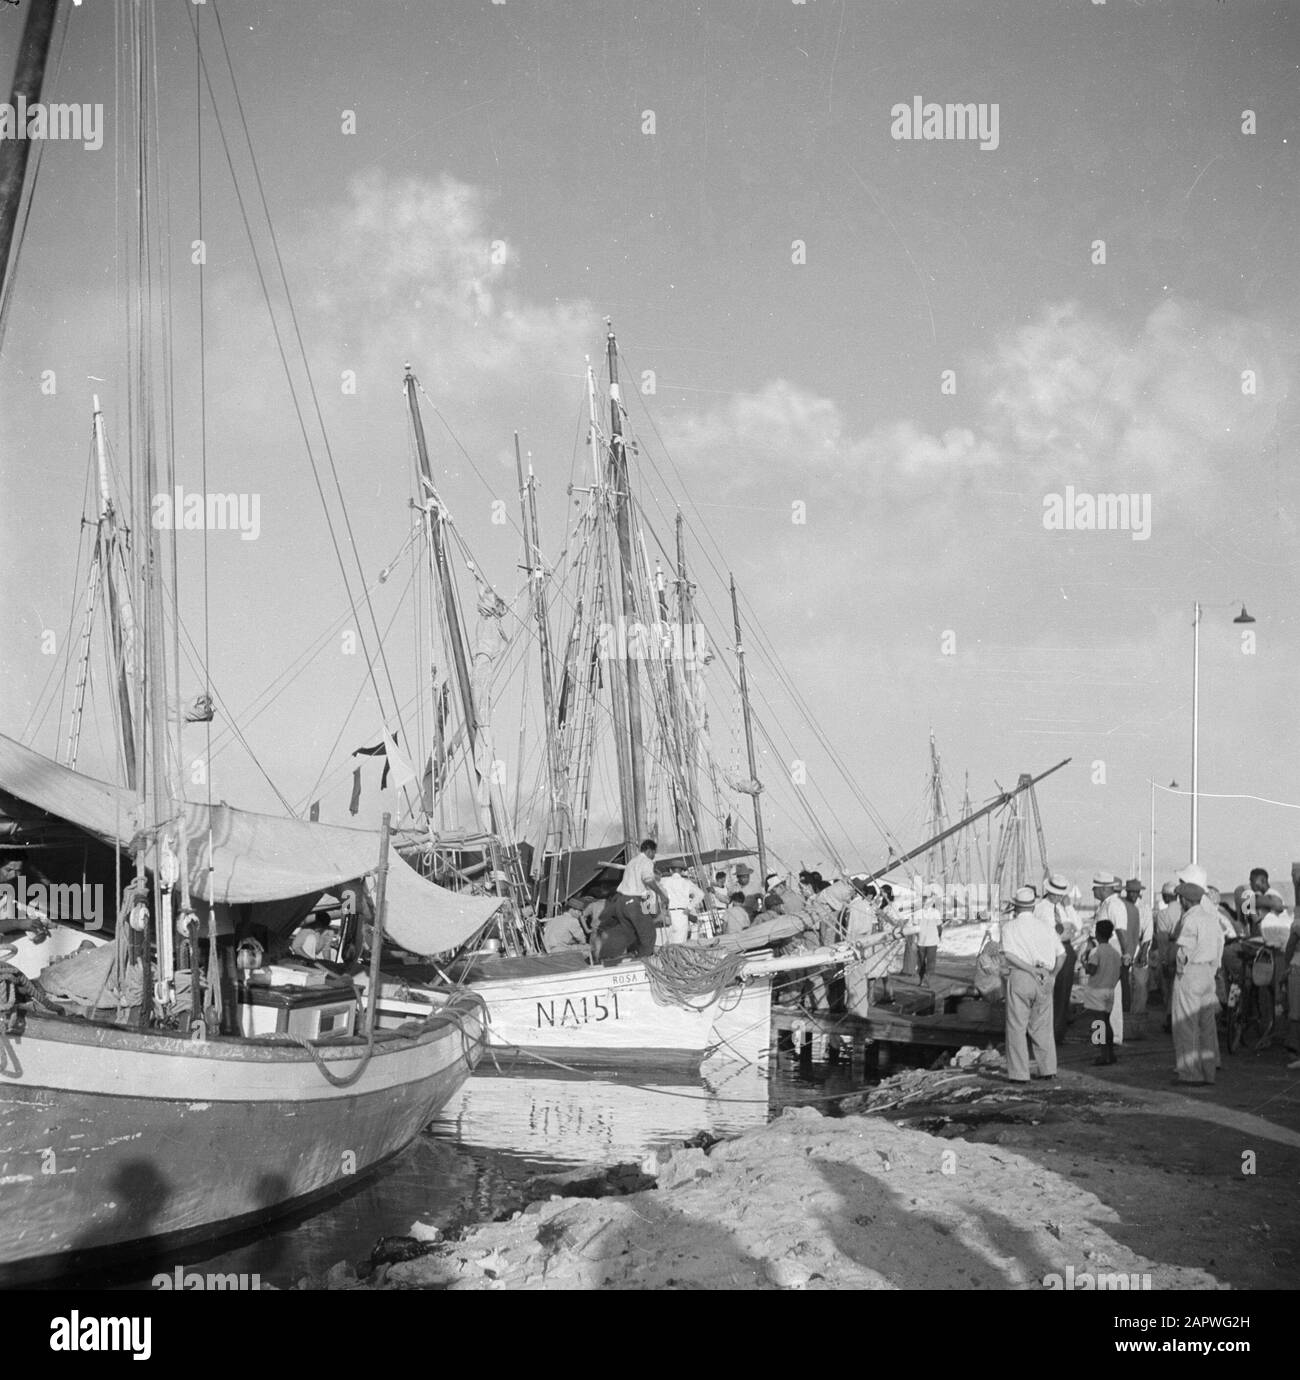 Viaggio al Suriname e al mercato delle Antille Olandesi nel porto di Oranjestad ad ad Aruba Data: 1947 Ubicazione: Aruba, Oranjestad Parole Chiave: Porti, popolazione indigena, mercati, navi Foto Stock